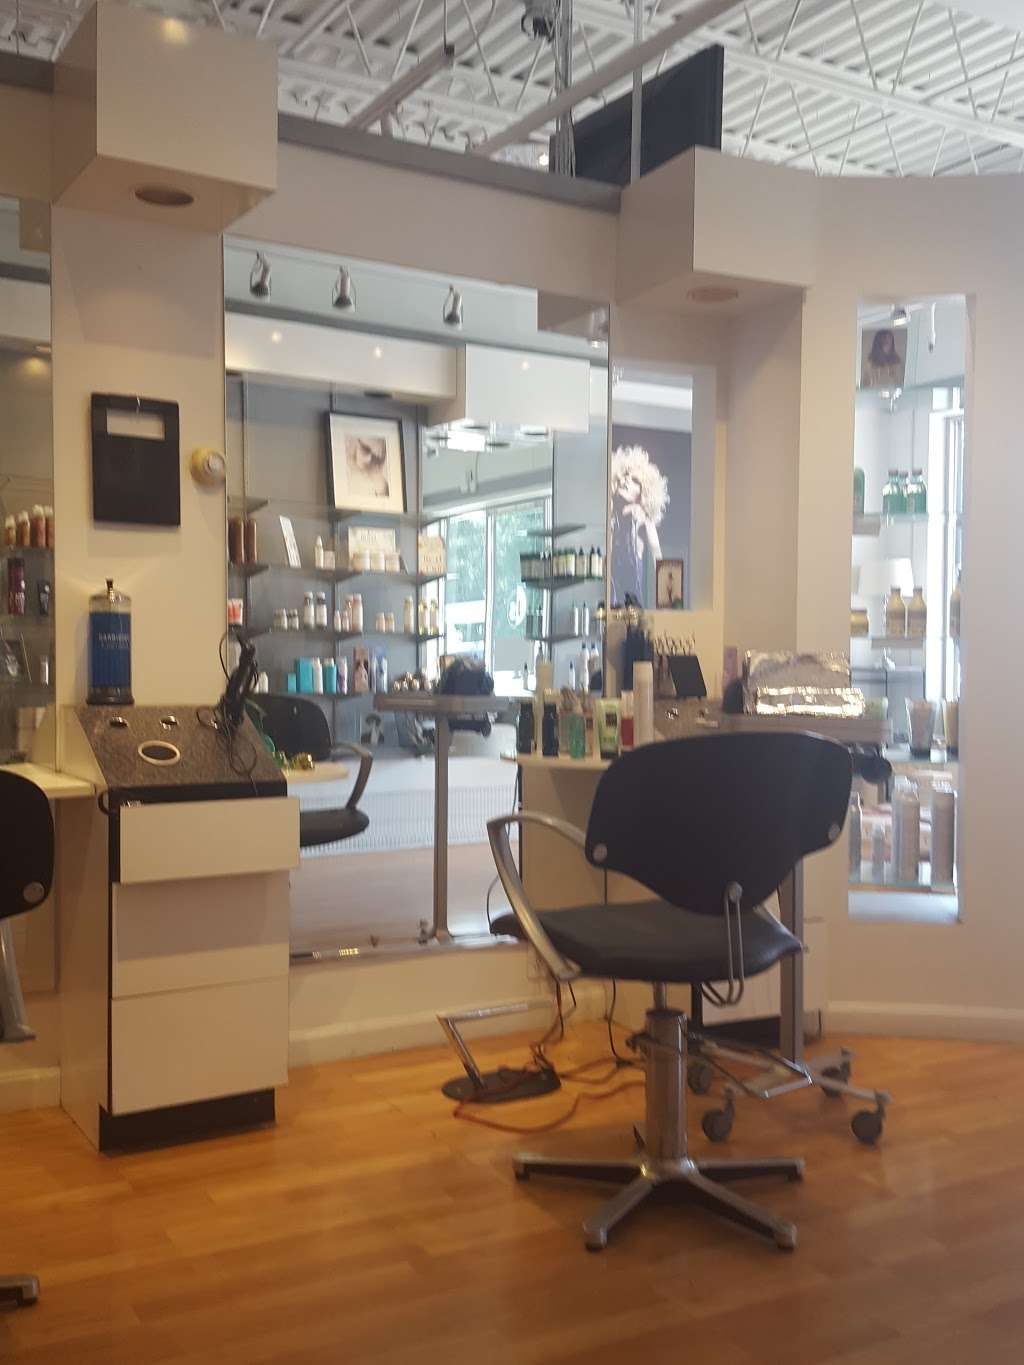 Joe Seminara Hair Design Salon | 1612 Main St, Weymouth, MA 02190 | Phone: (781) 331-6170